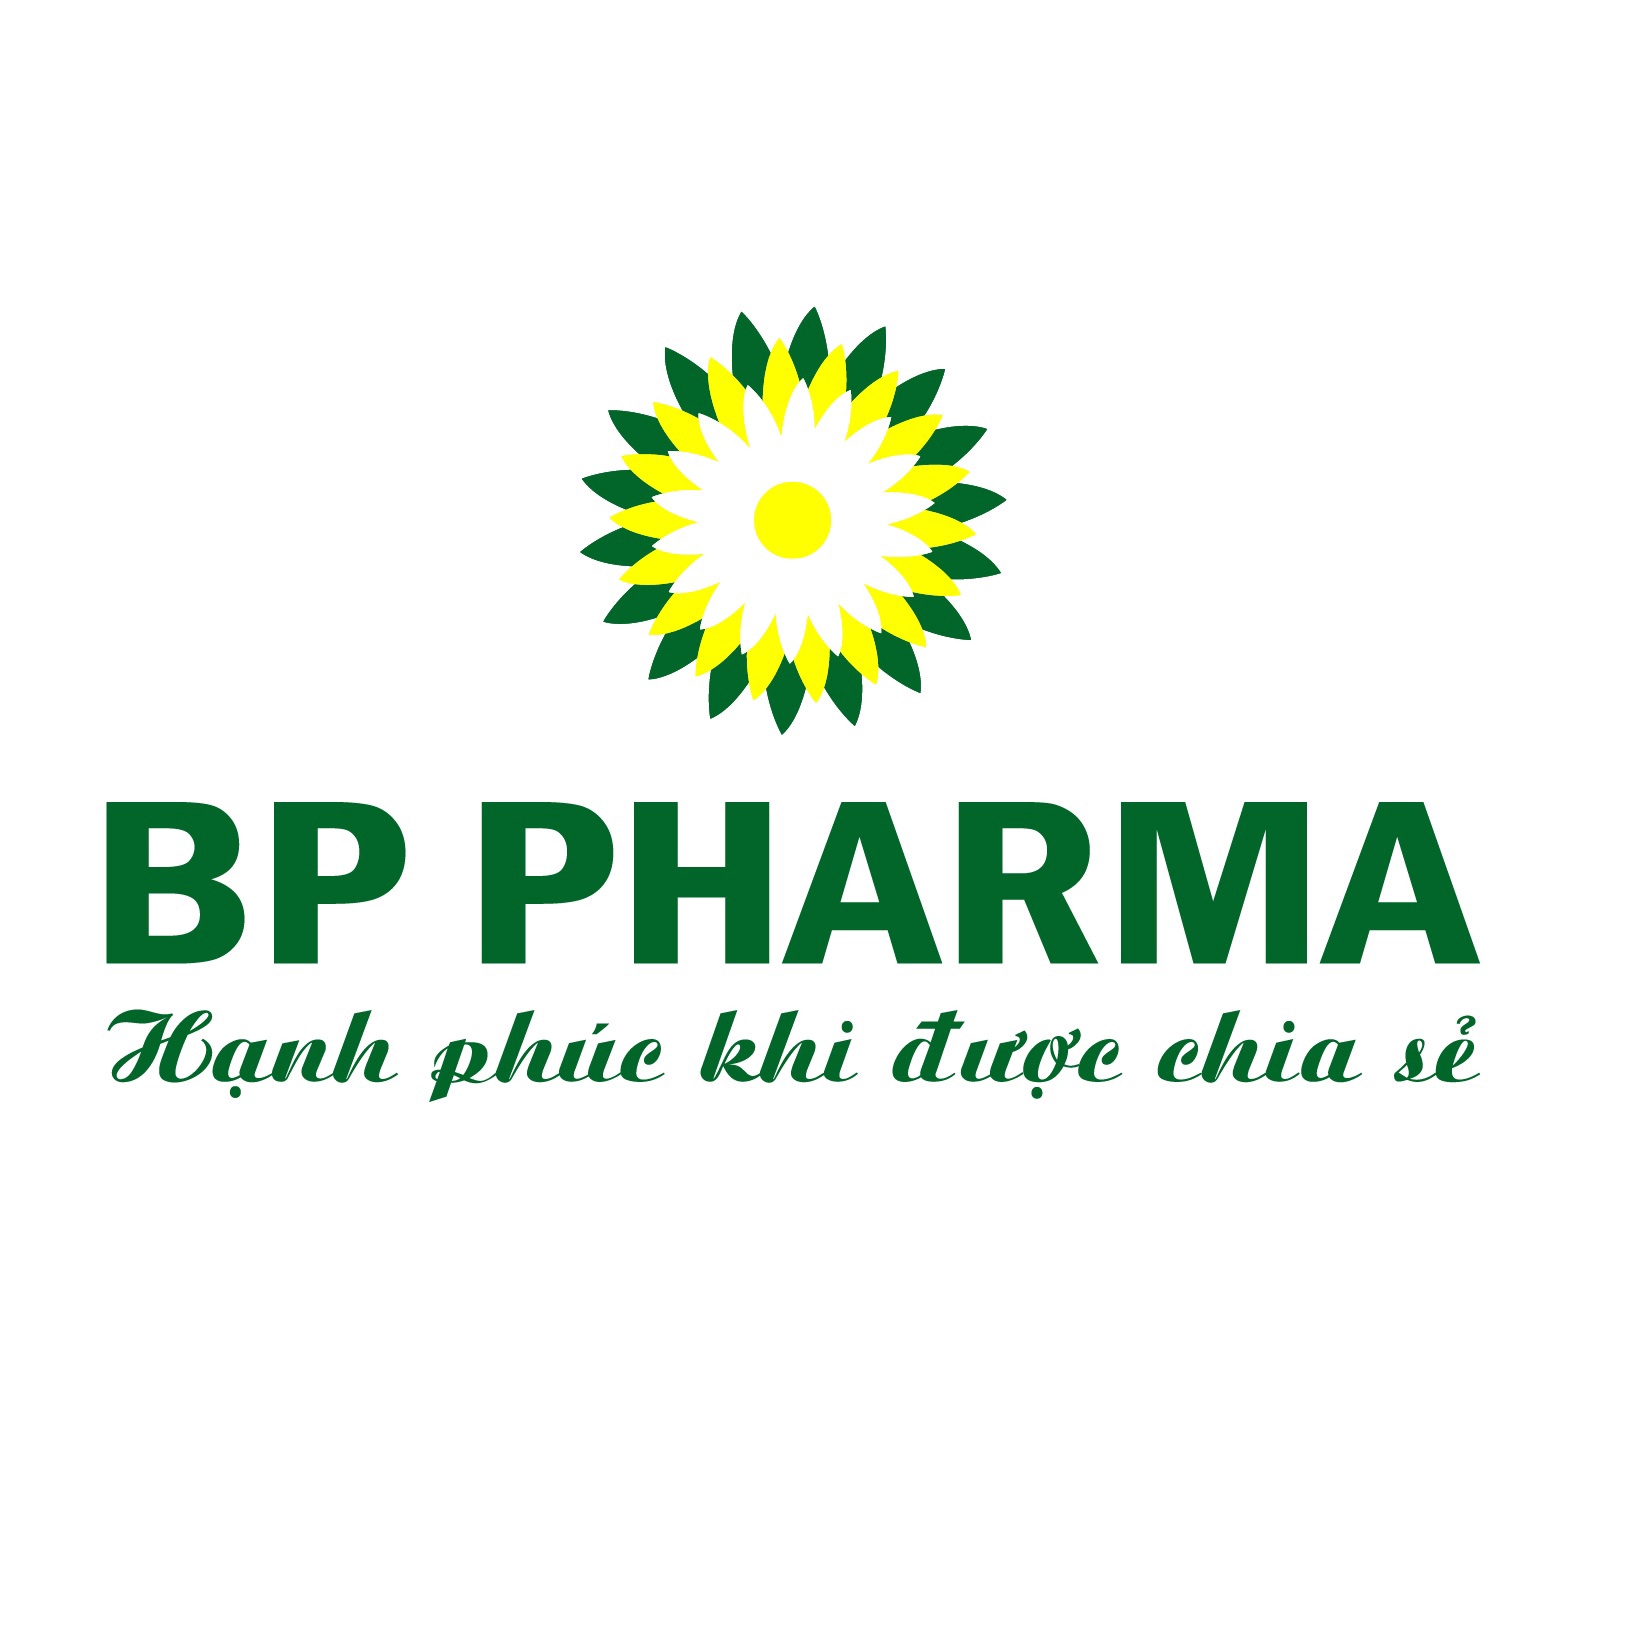 BP Pharma